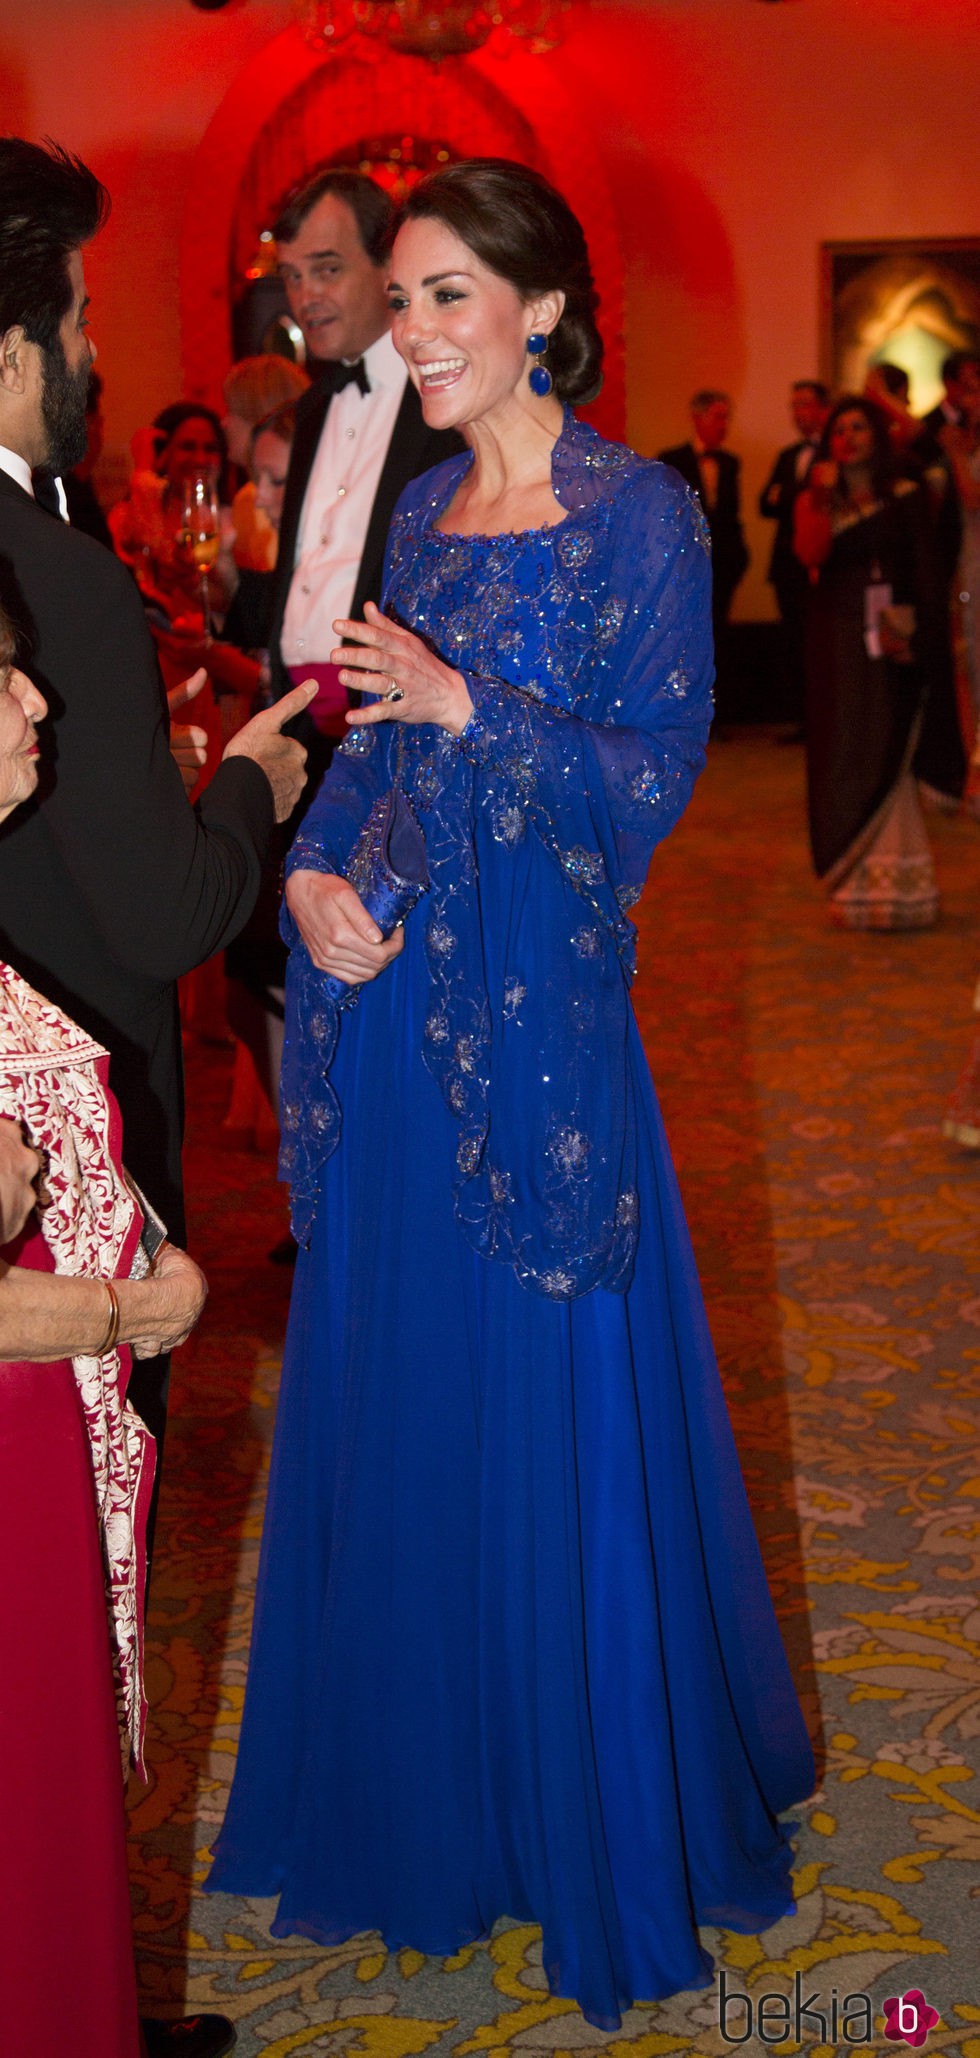 Duquesa de Cambridge divertida en la cena benéfica de Bollywood en su viaje a la India